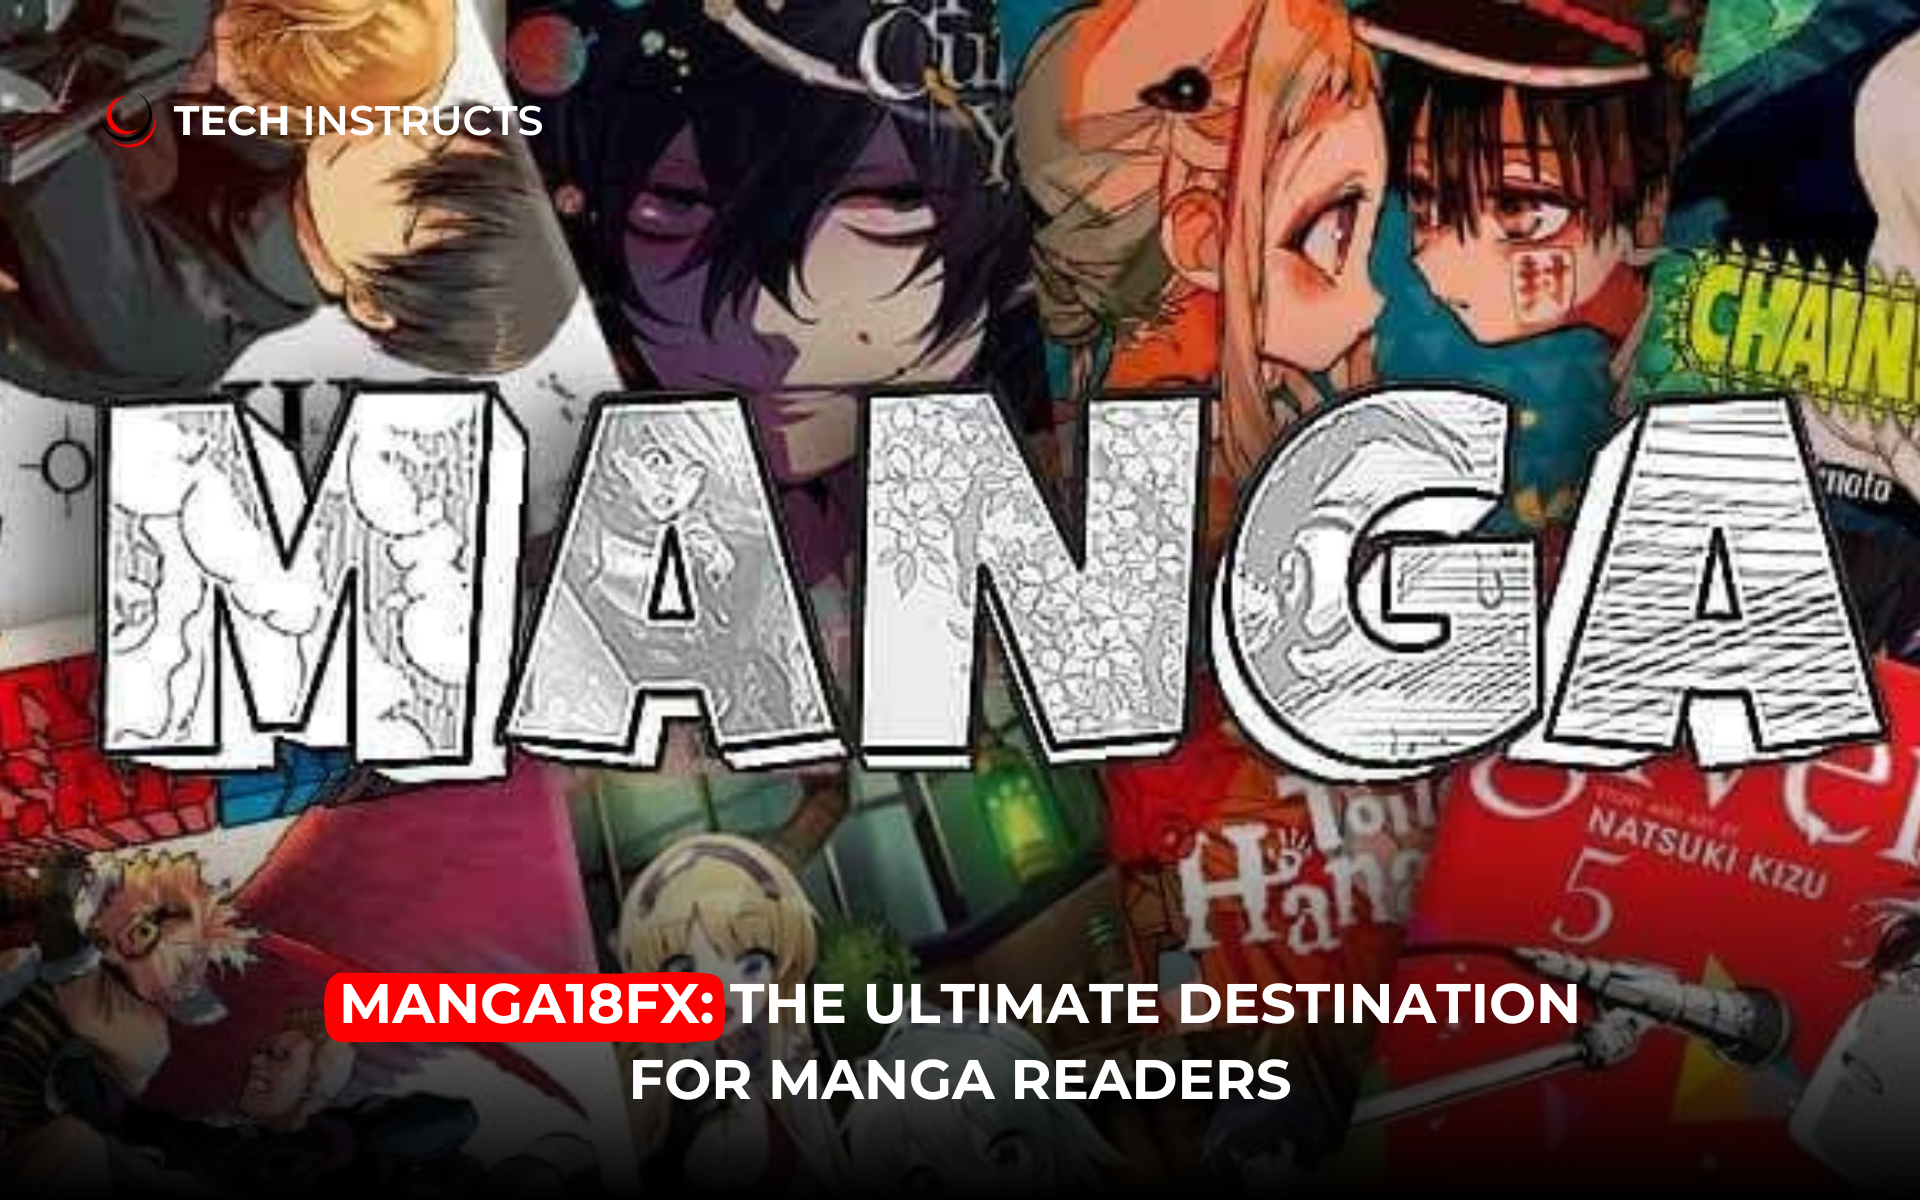 What are your favorite BL manga/manhwa/manhua series? - Quora